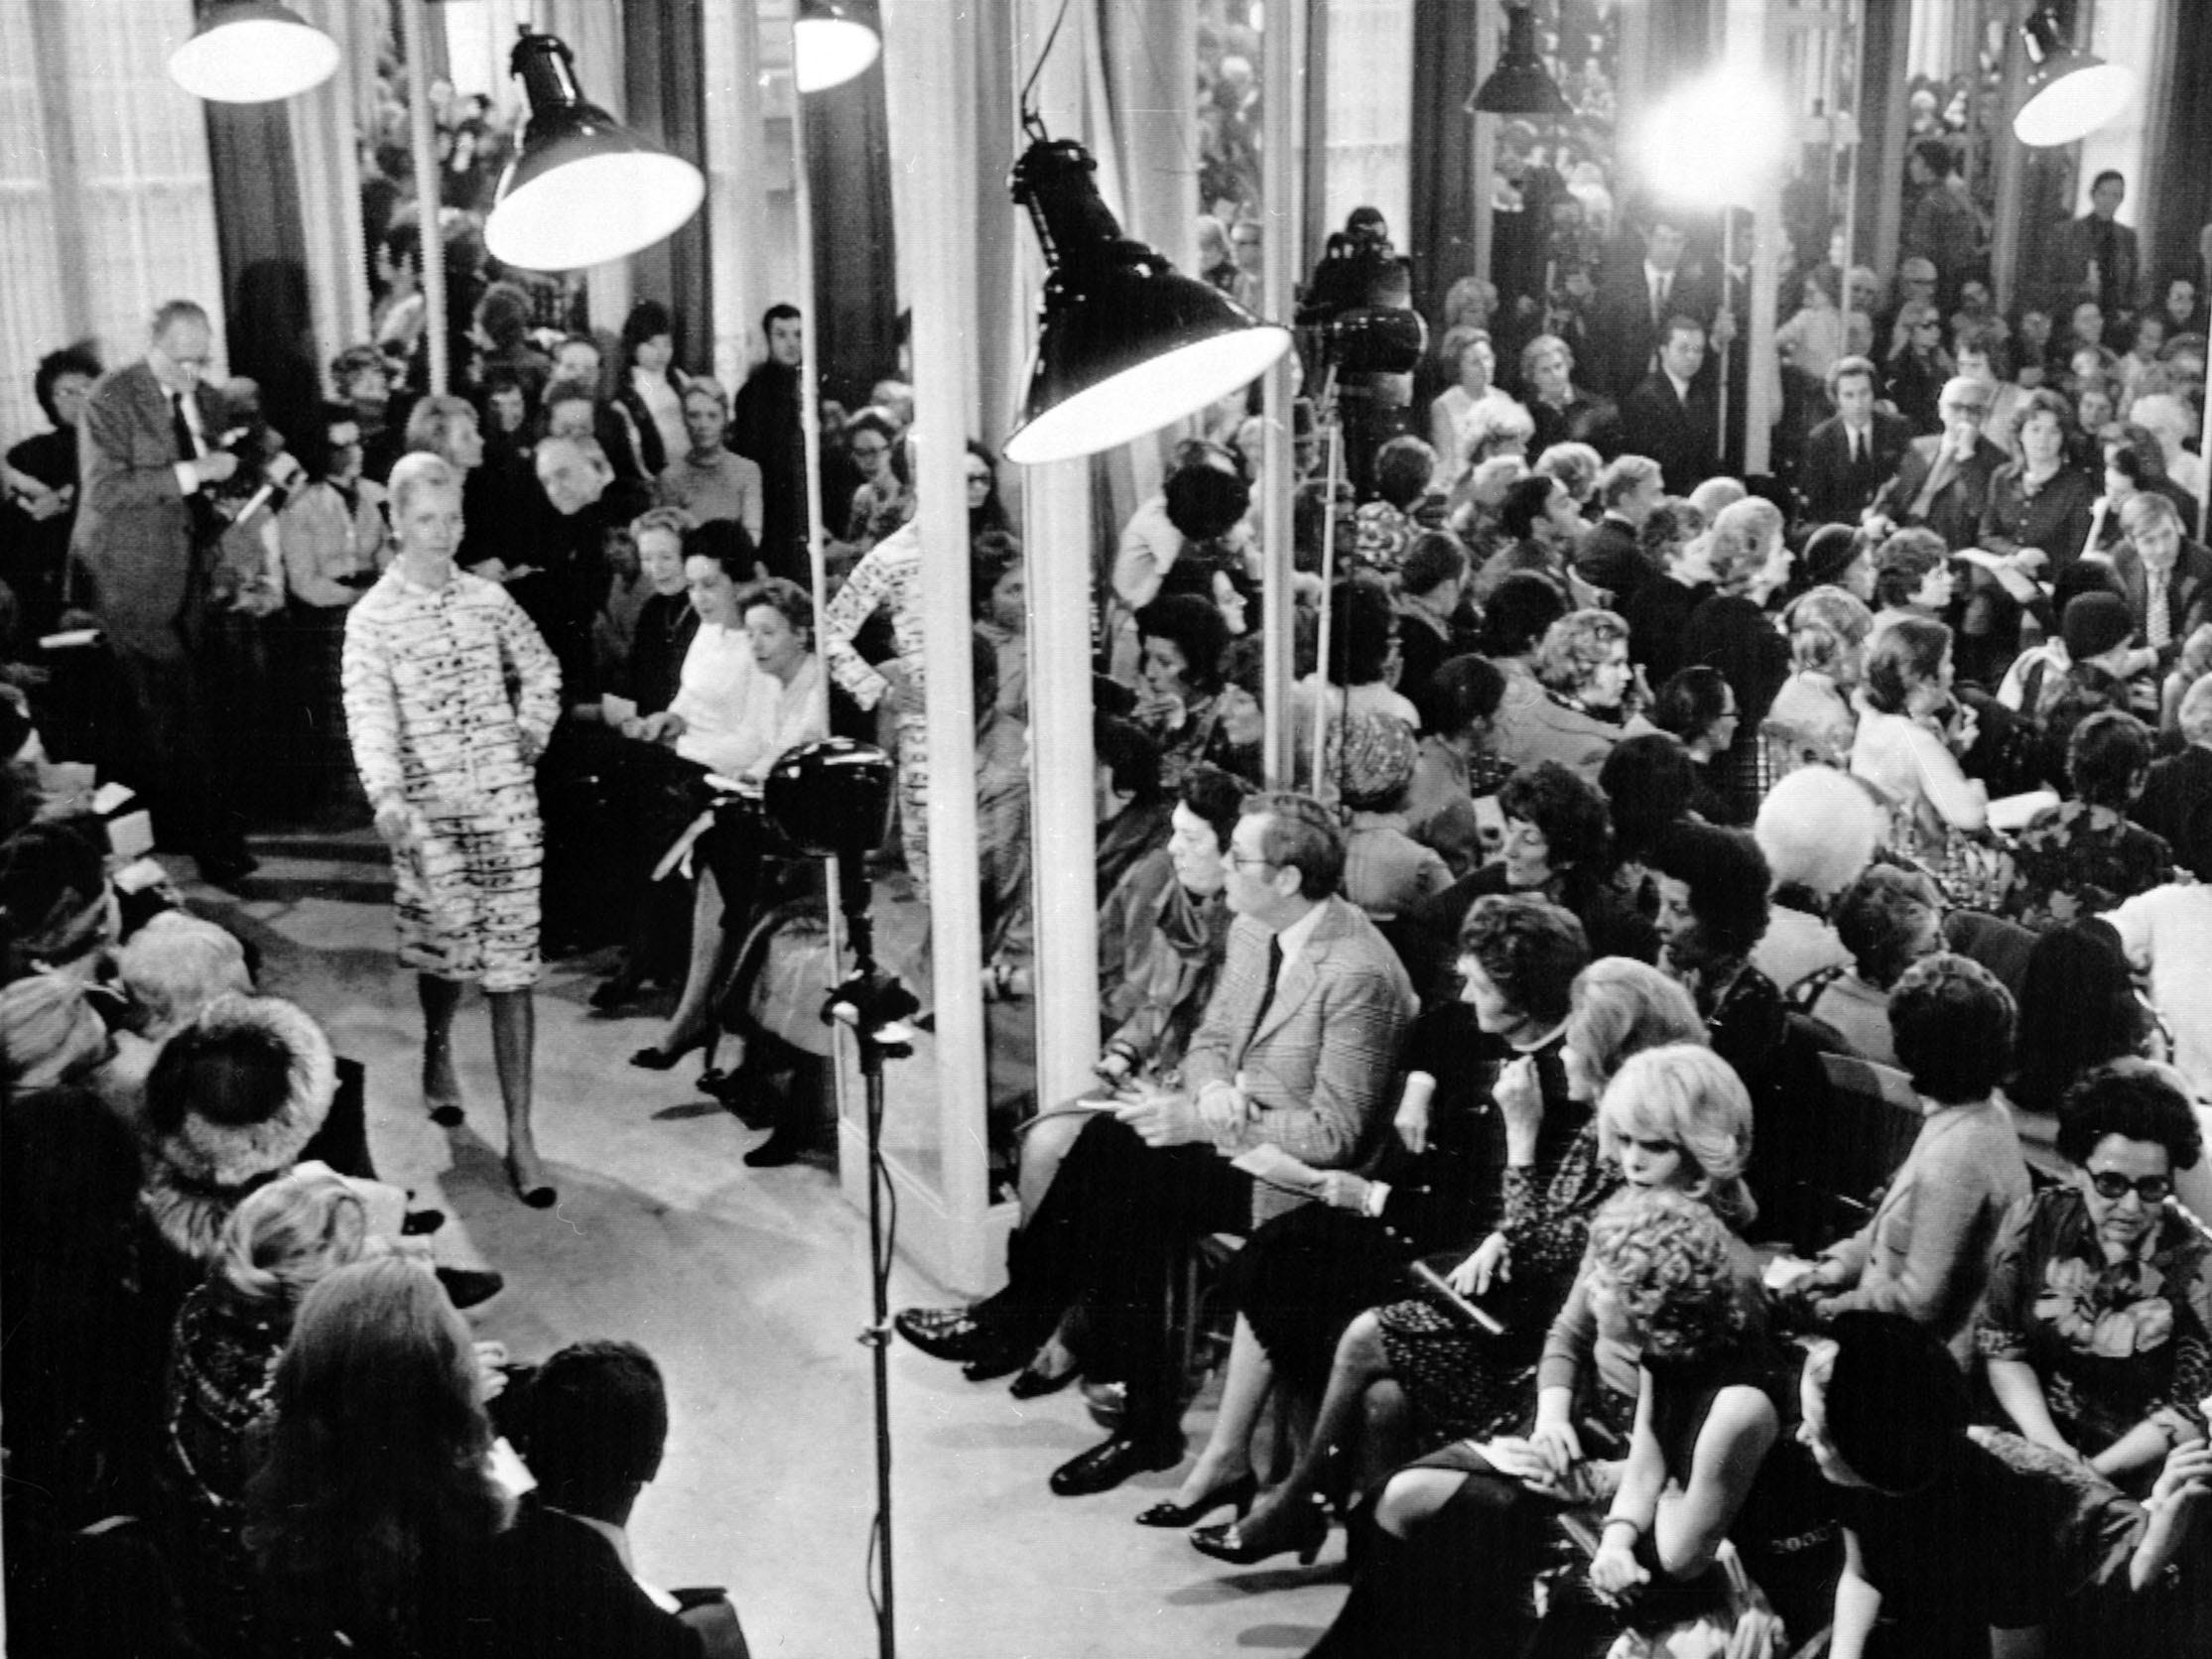 Menschen sitzen in einem überfüllten Raum und sehen zu, wie Models mit Chanel den Laufsteg hinunterlaufen